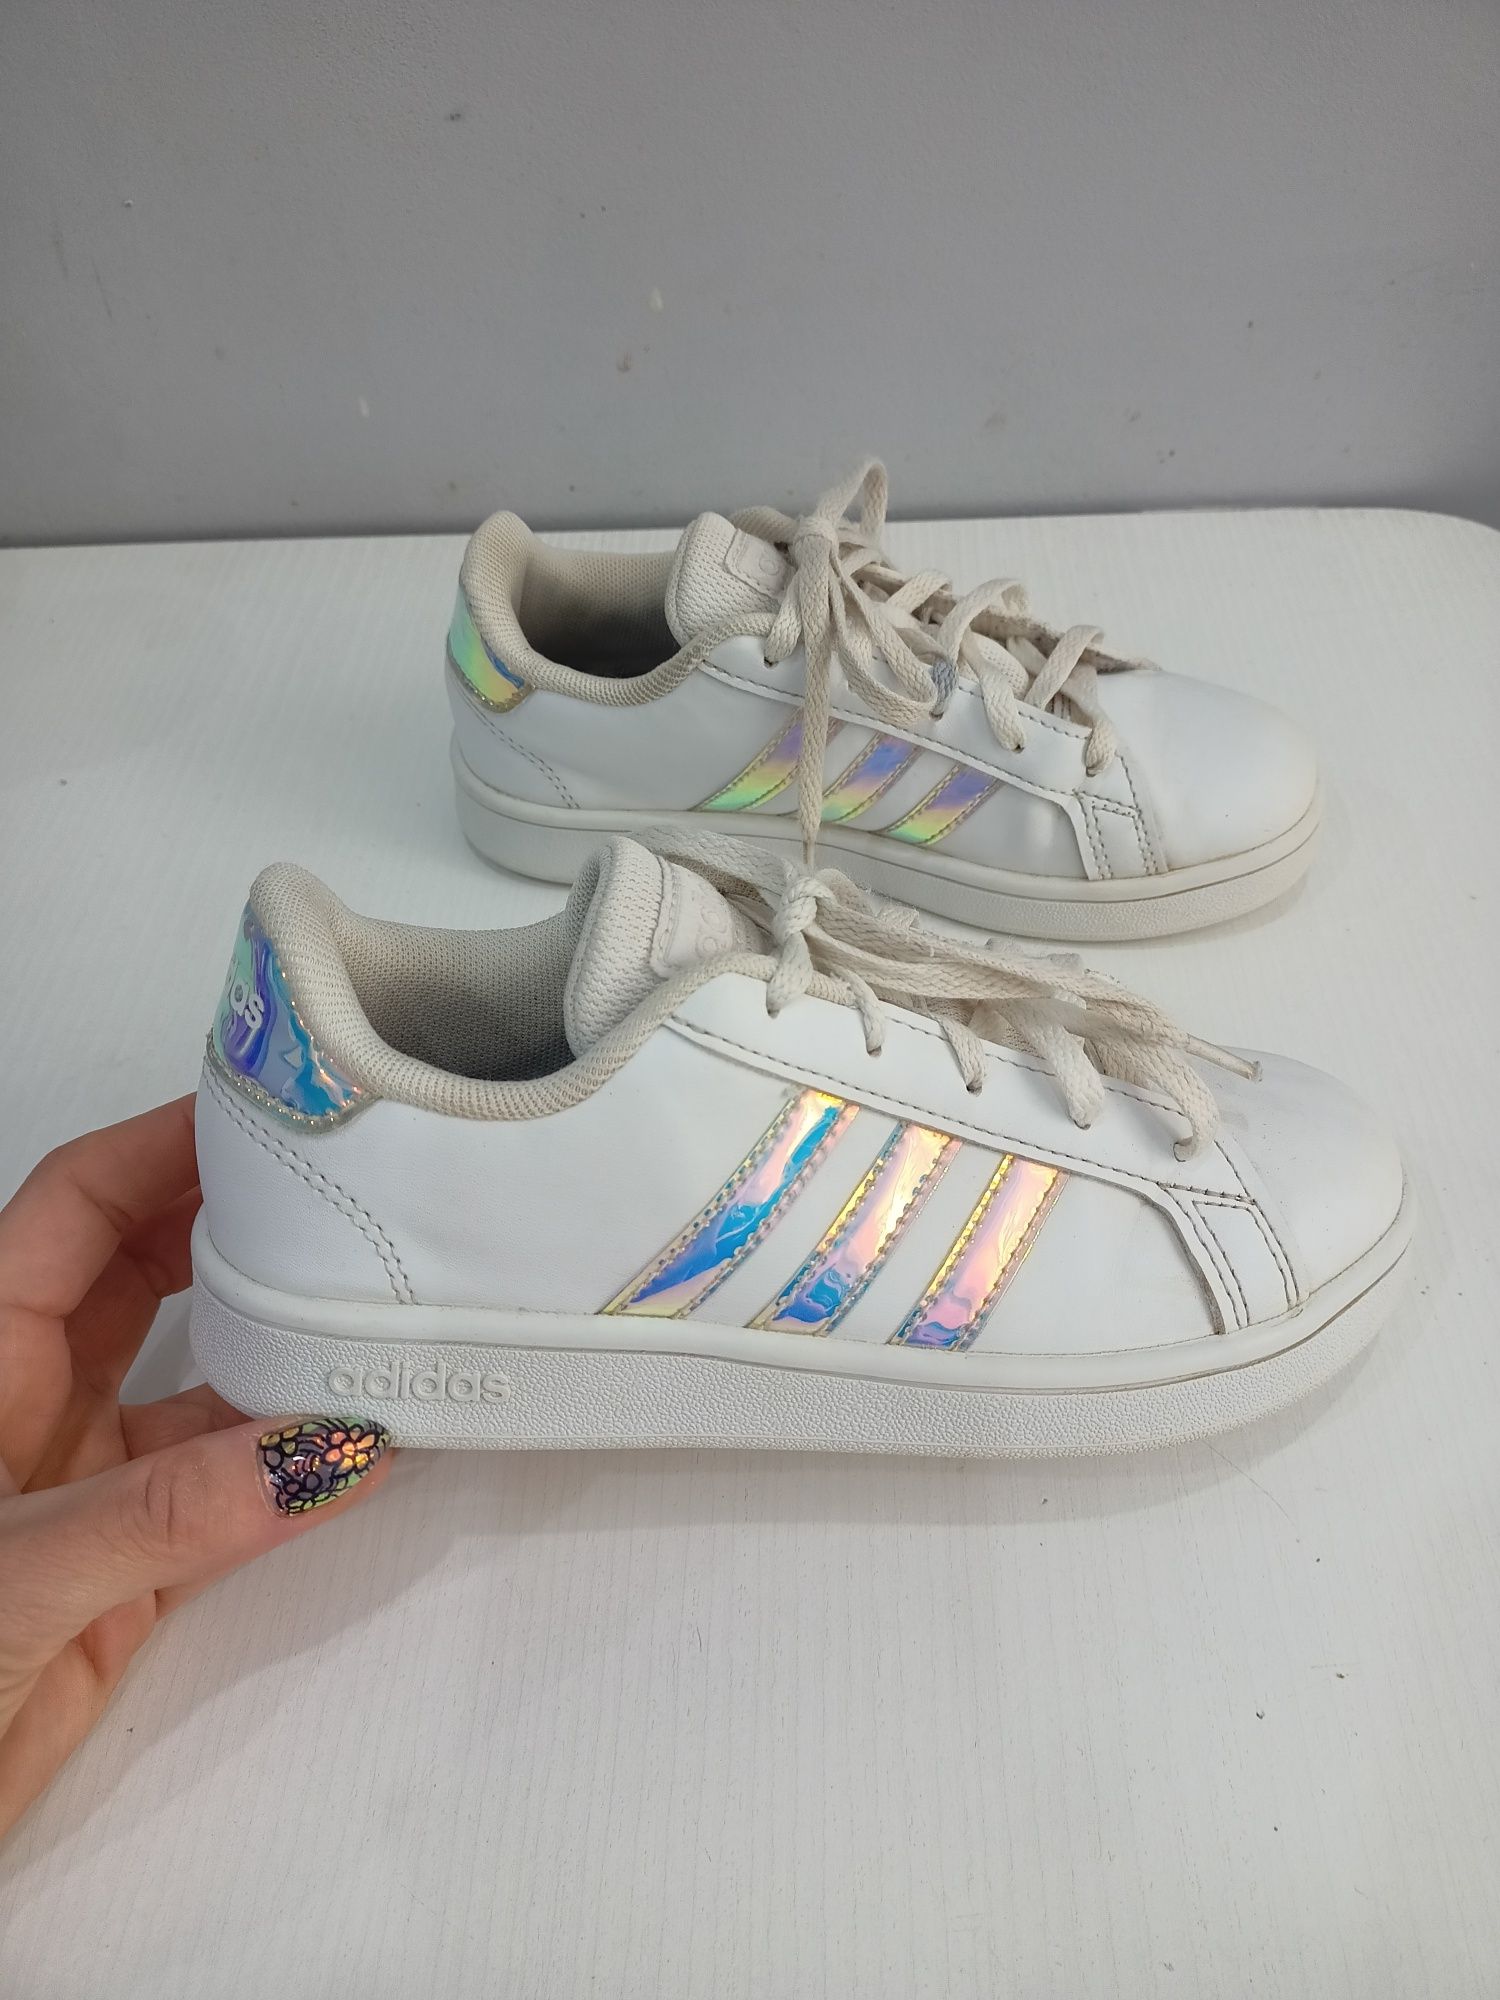 Buty sportowe Adidas rozmiar 31 1/2 dla dziewczynki hologramowe